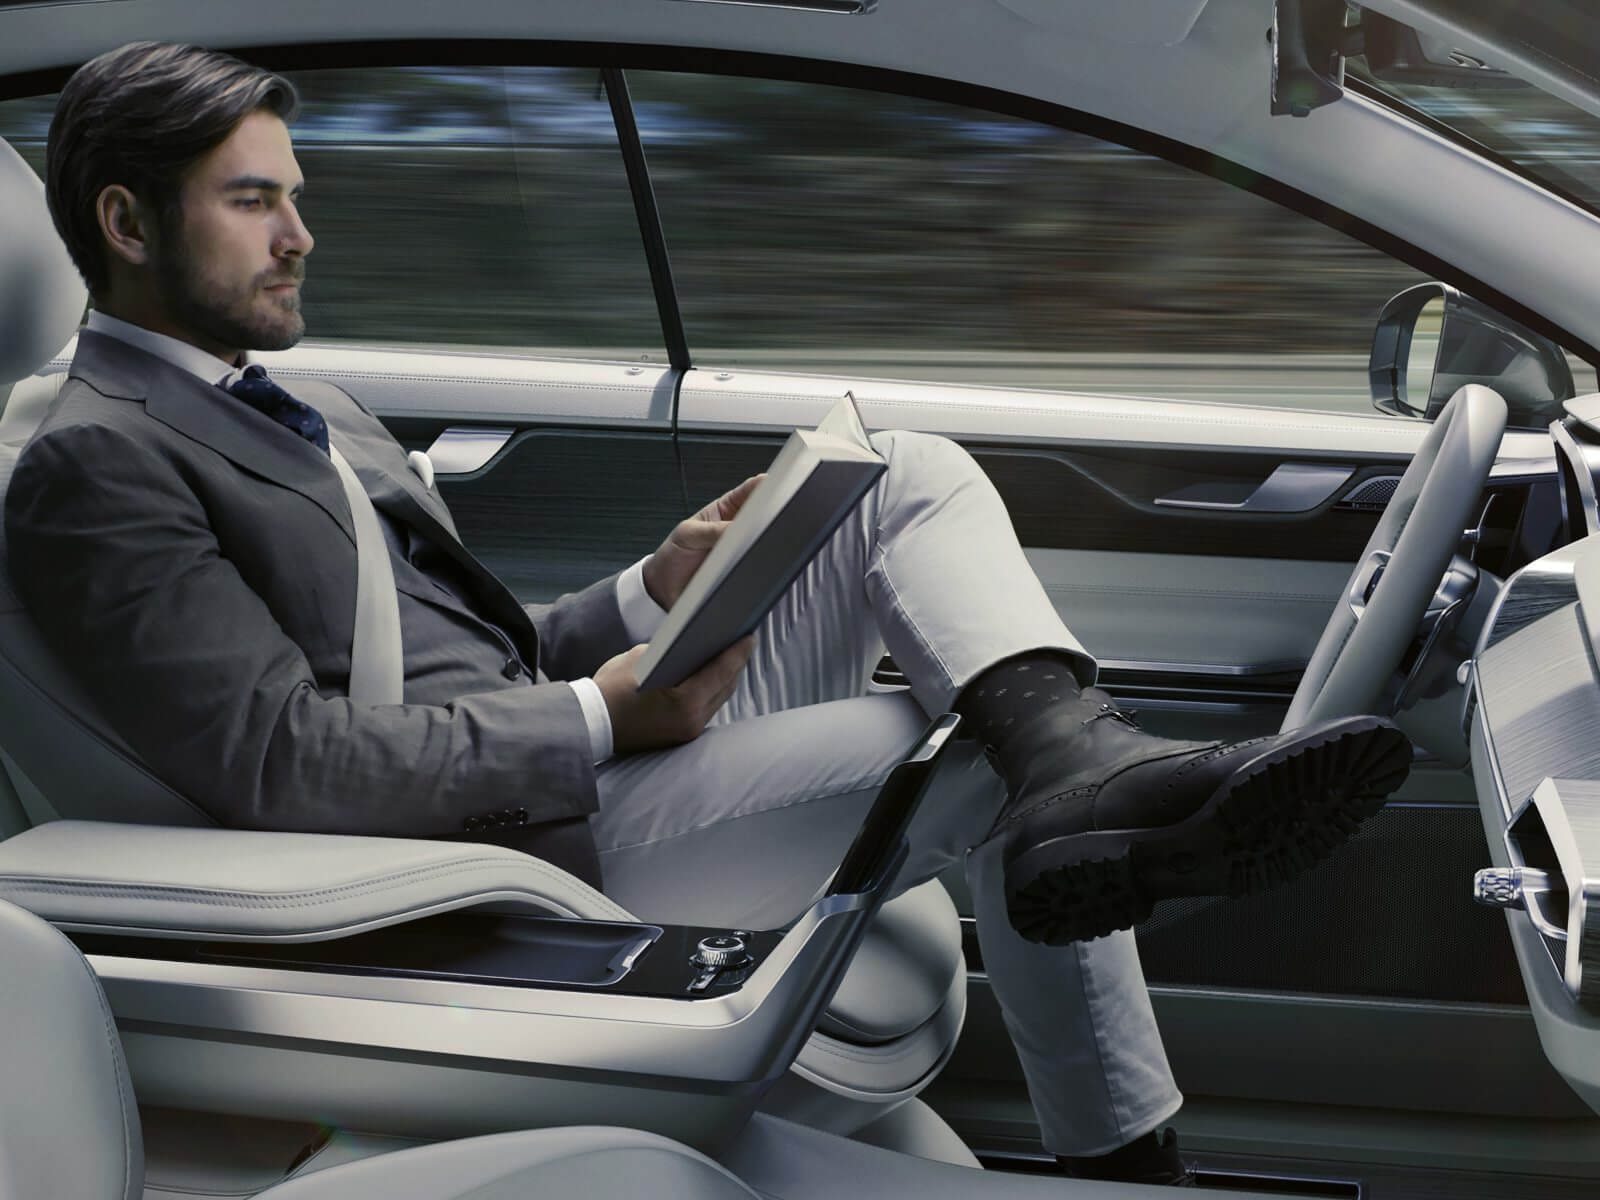 Volvo's autonomous driving concept car